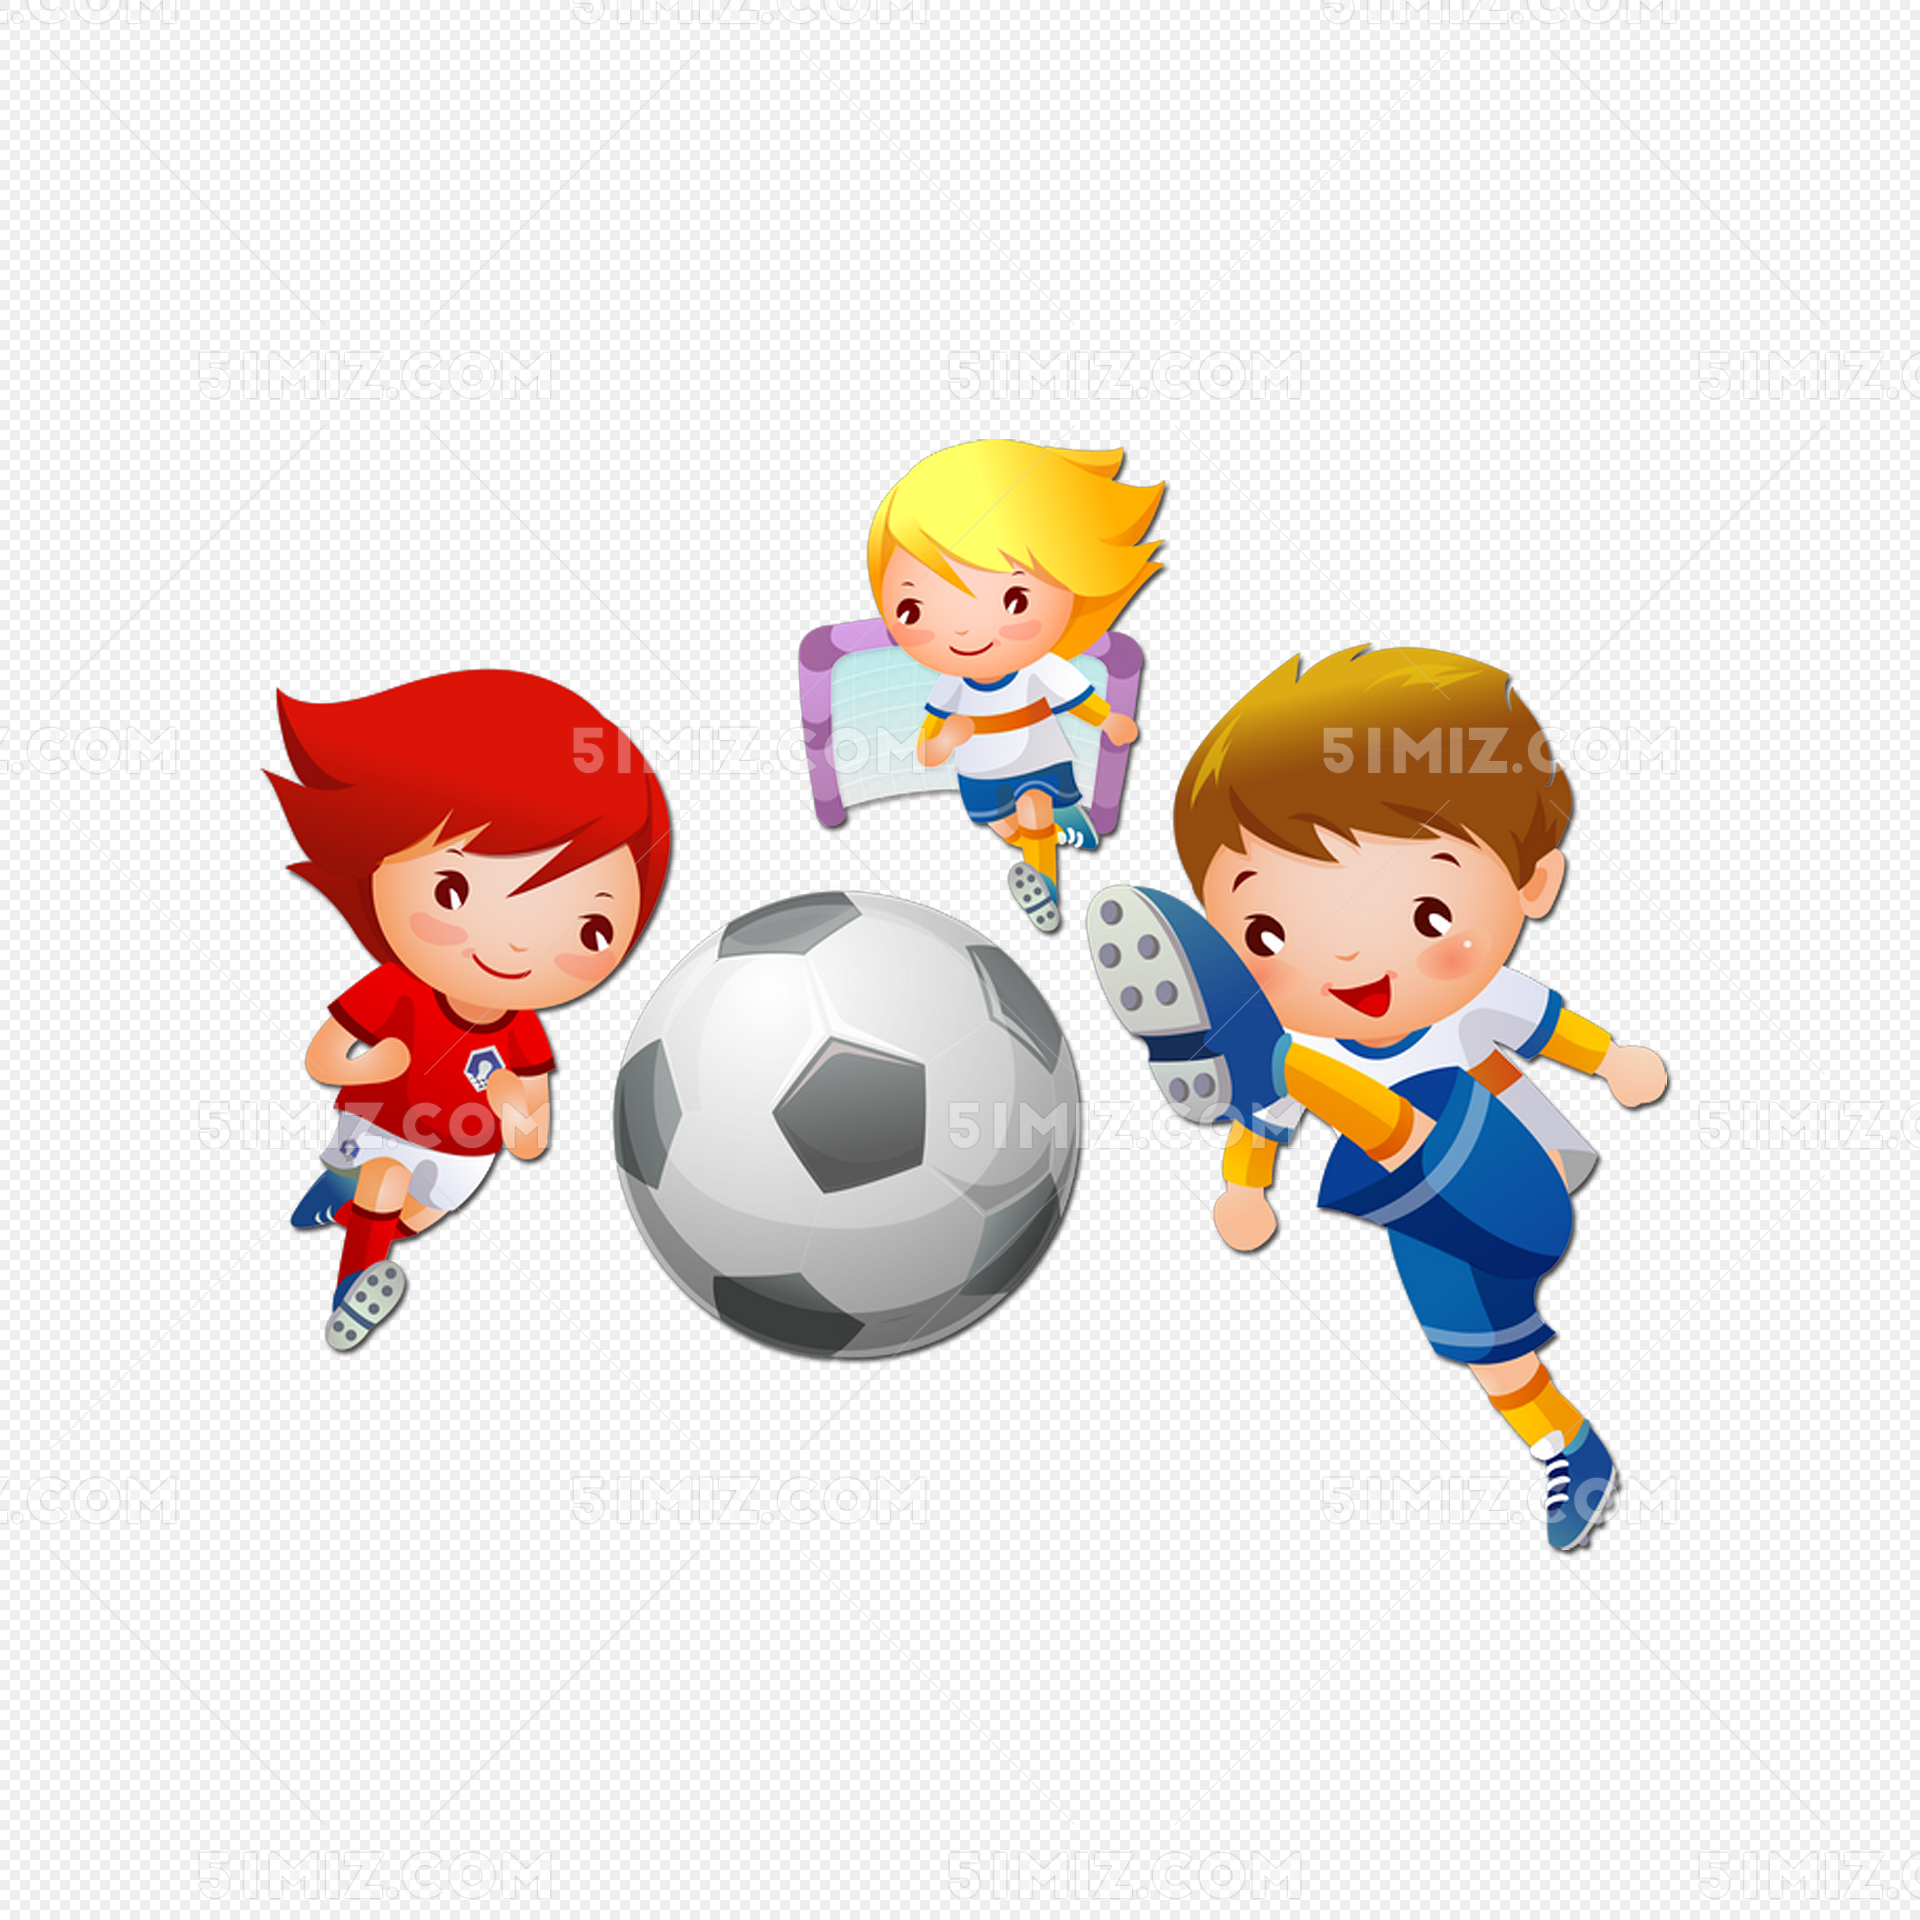 足球运动踢球的小朋友图片素材免费下载 - 觅知网